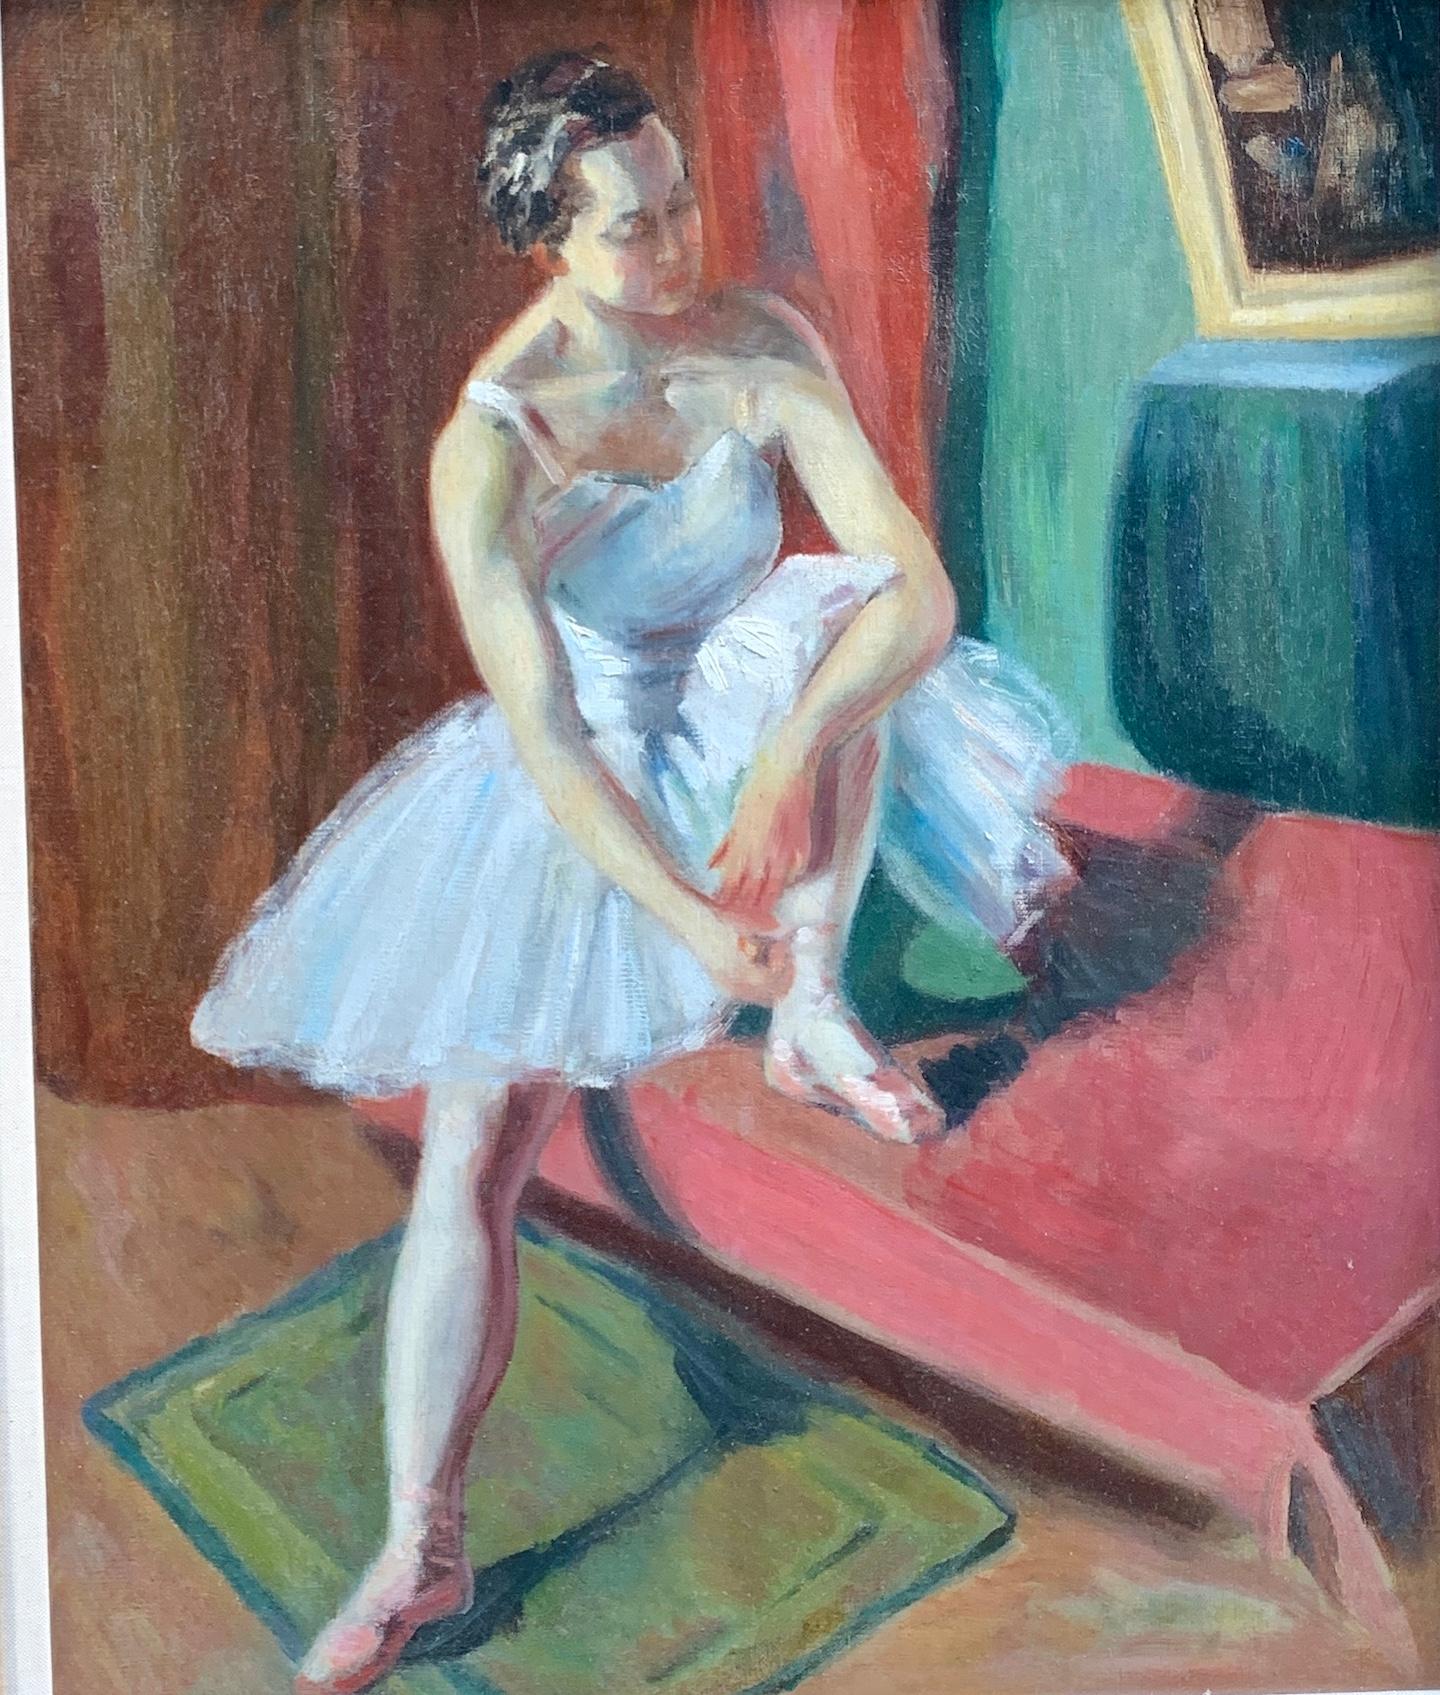 Französische, sitzende Ballerina aus Öl des frühen 20. Jahrhunderts, die ihre Ballett slippers anpasst. – Painting von Impressionist French School